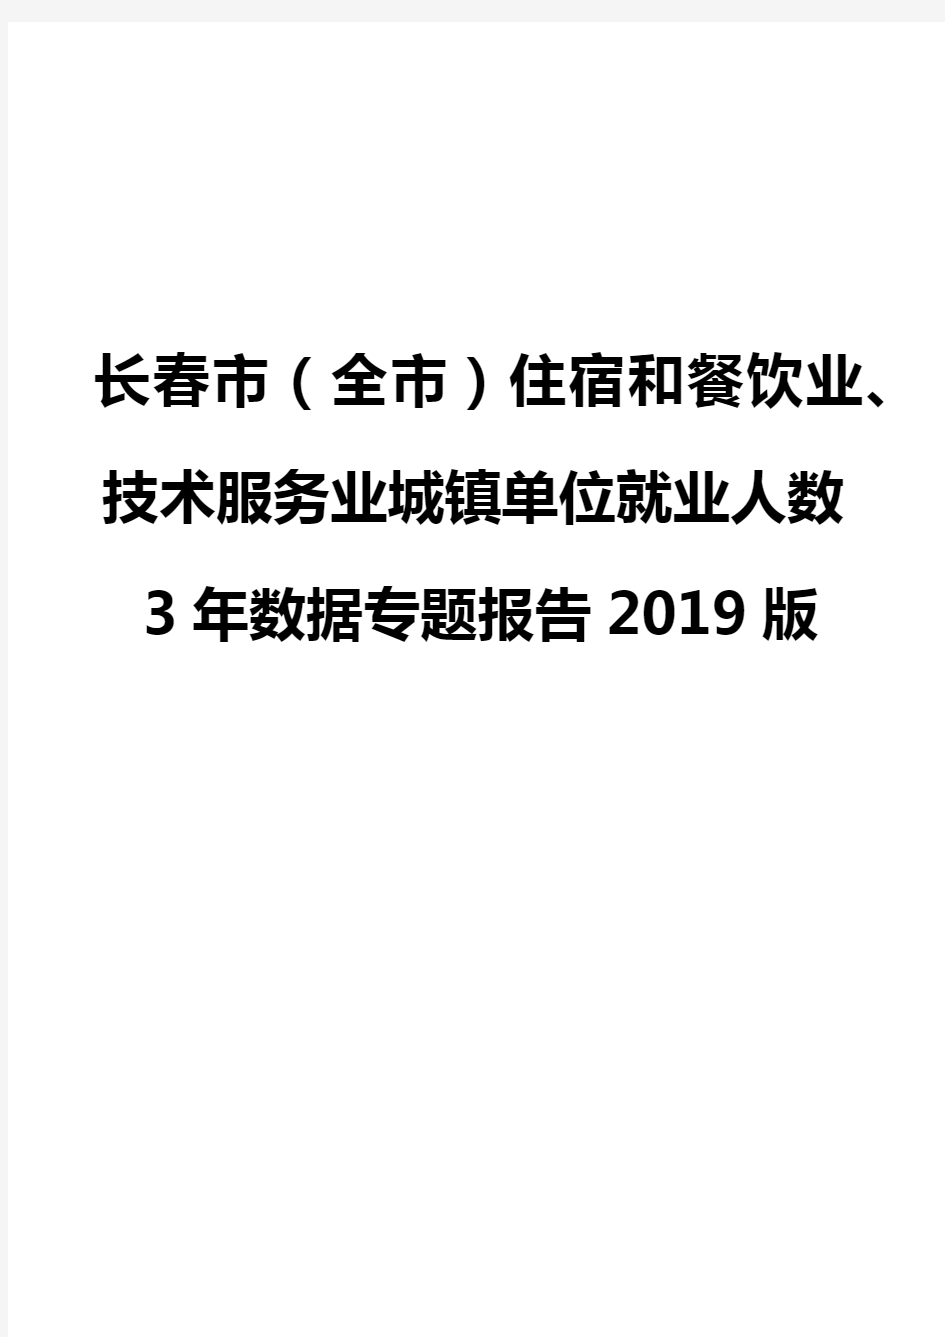 长春市(全市)住宿和餐饮业、技术服务业城镇单位就业人数3年数据专题报告2019版